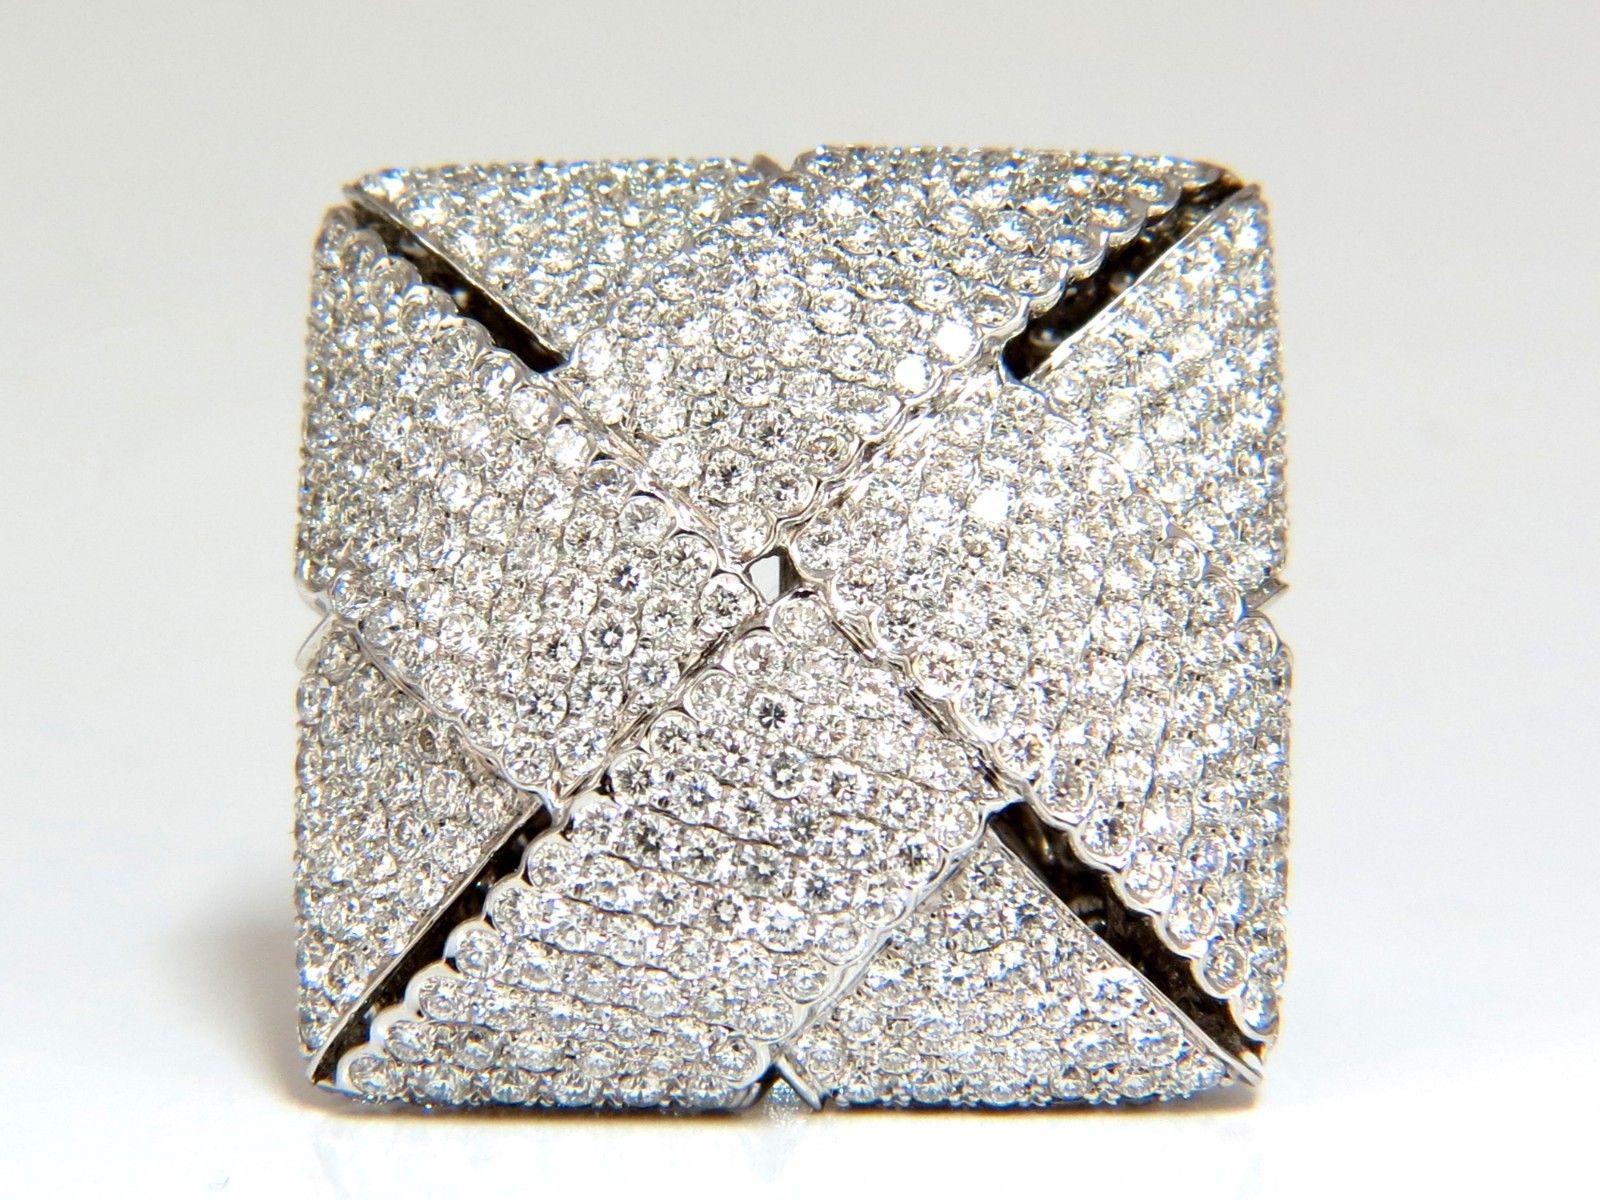 Zeitgenössischer dreidimensionaler Ring.


Unisex-Kreuzwebe-Muster

7.15ct. Natürliche runde Diamanten mit Brillanten
Vs-2 Klarheit  Farbe F.

550 Diamanten zählen

18kt Weißgold.

24 Gramm

Gesamter Ring: 1.07 x 1,09 Zoll 

11mm Tiefe

Aktuelle